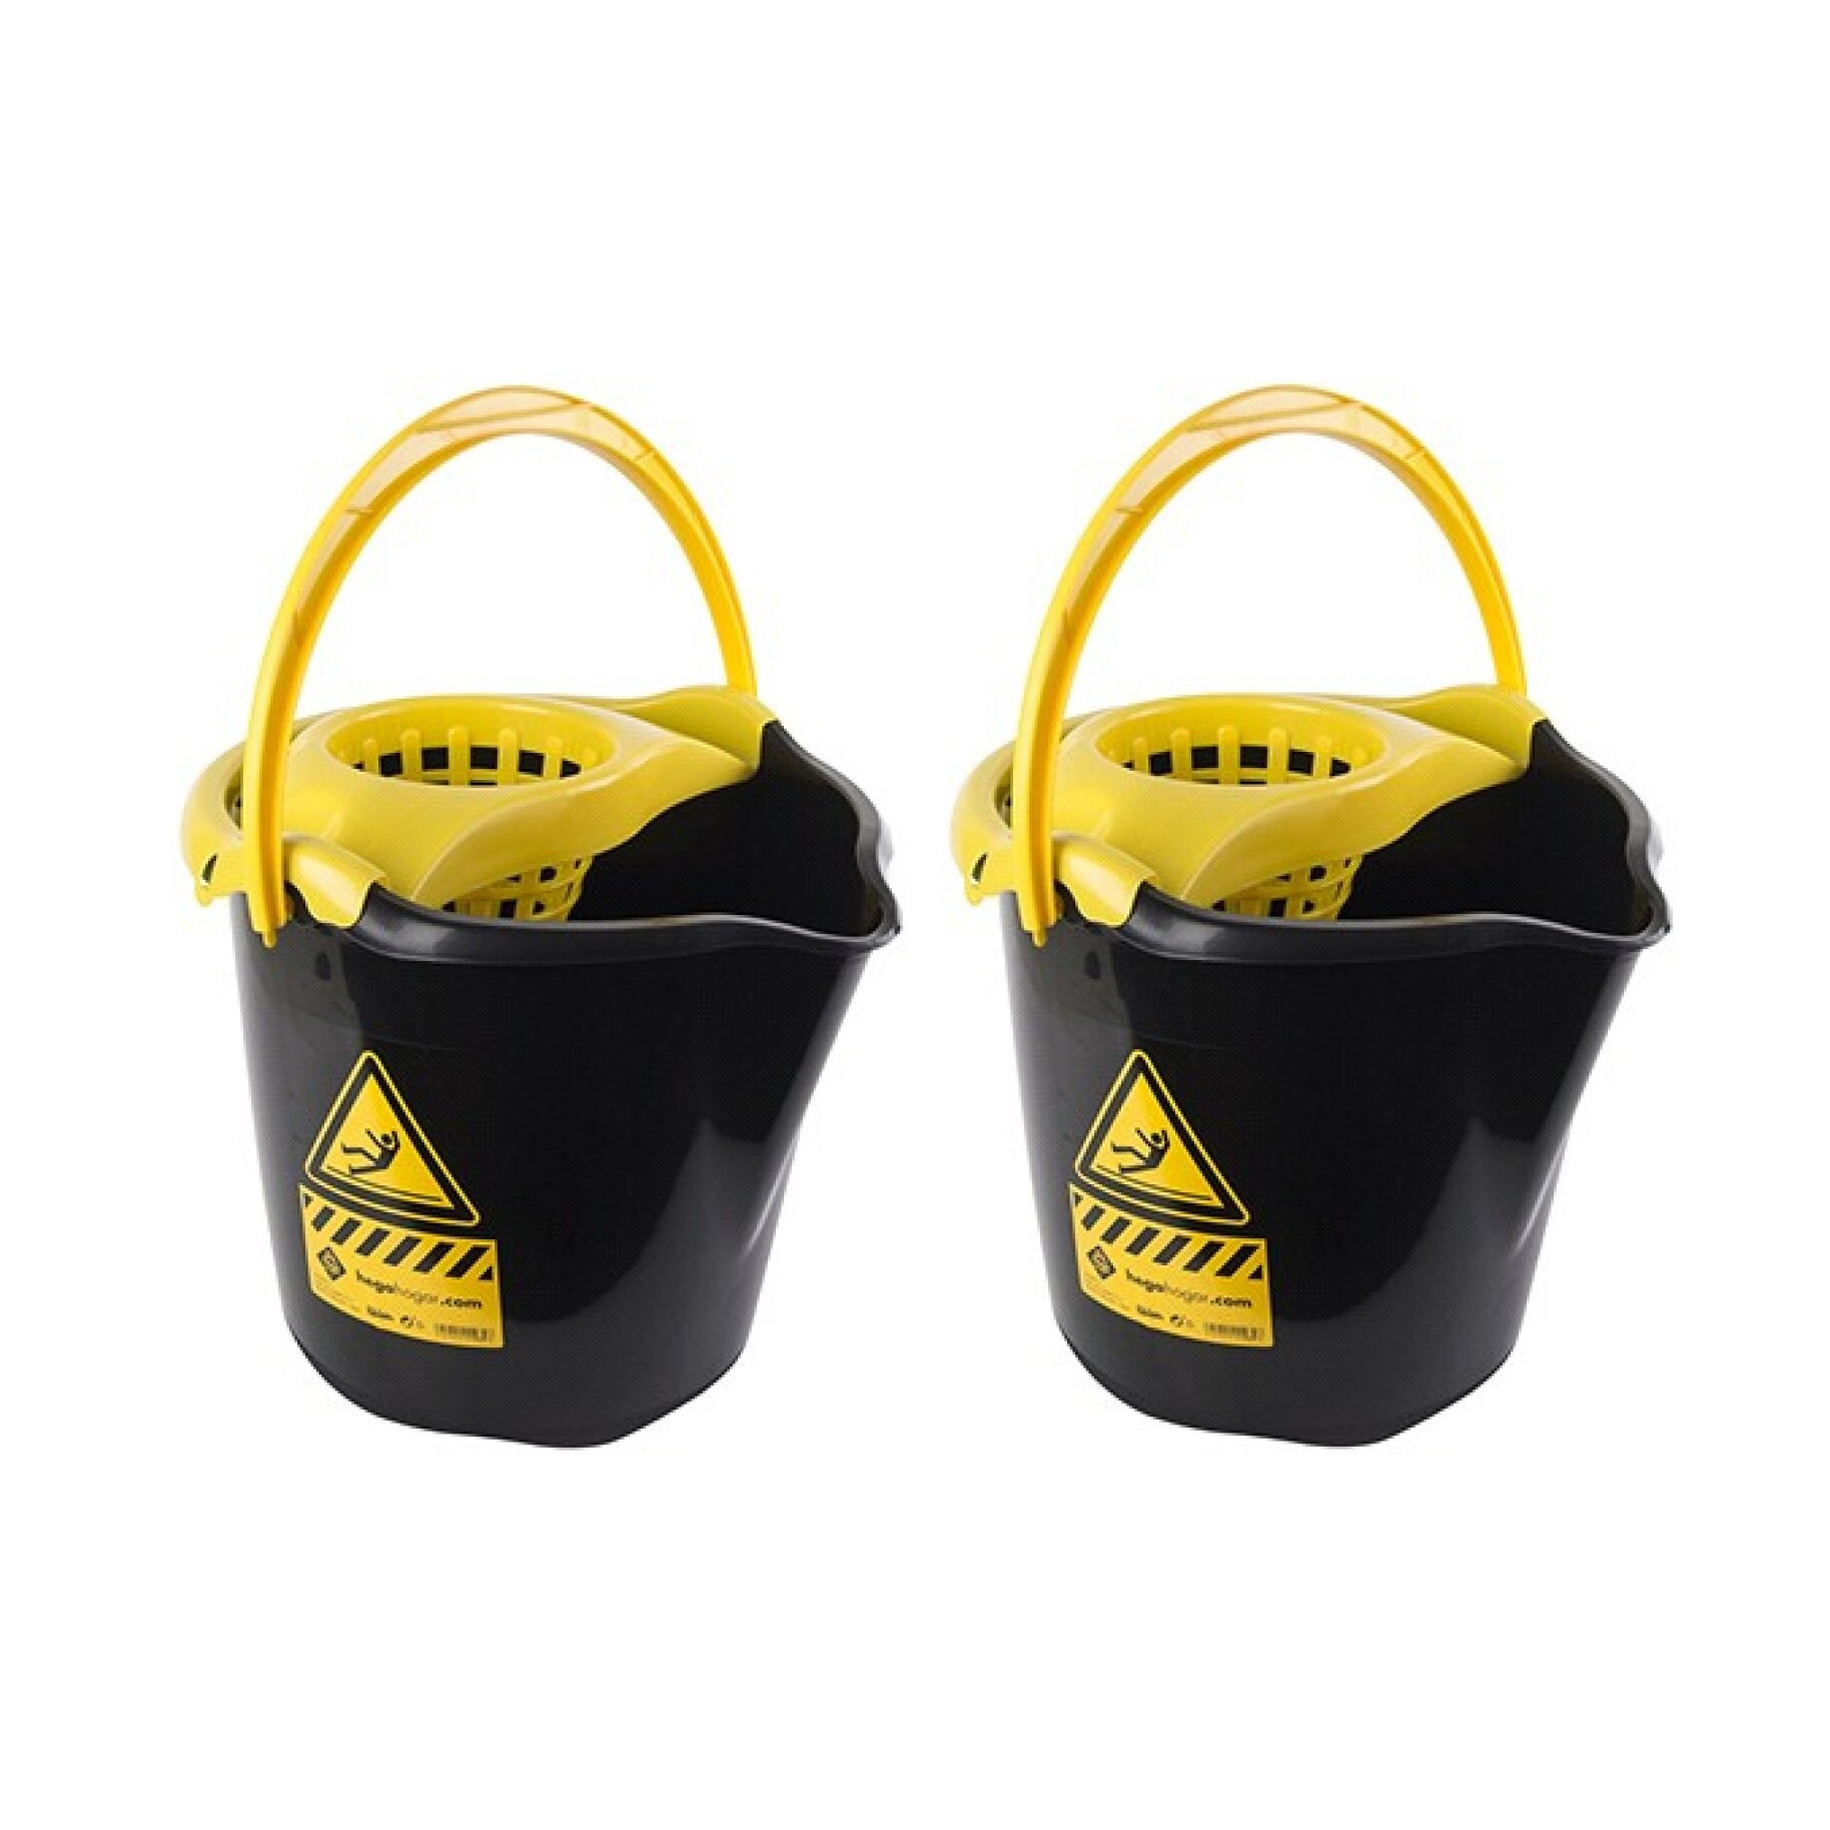 8x Huishoudemmers met dweil houder 13,5 liter zwart-geel caution 32 x 30 cm